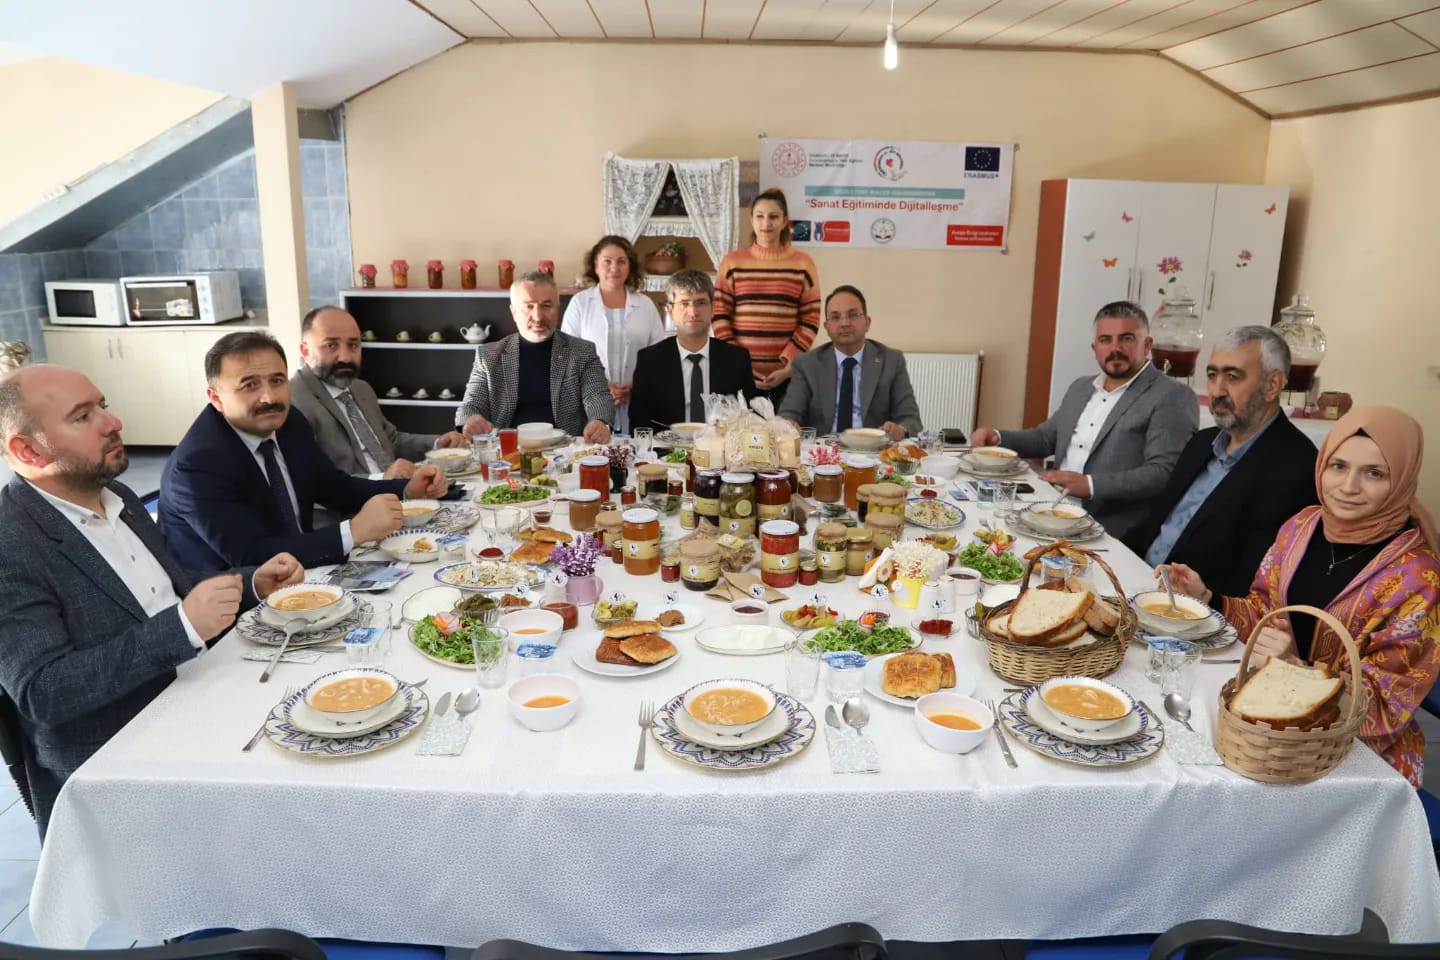 19 Mayıs İlçesinin Gastronomi Turizmi Potansiyelinin Belirlenmesi, Kültür ve Kırsal Turizme Entegrasyonu